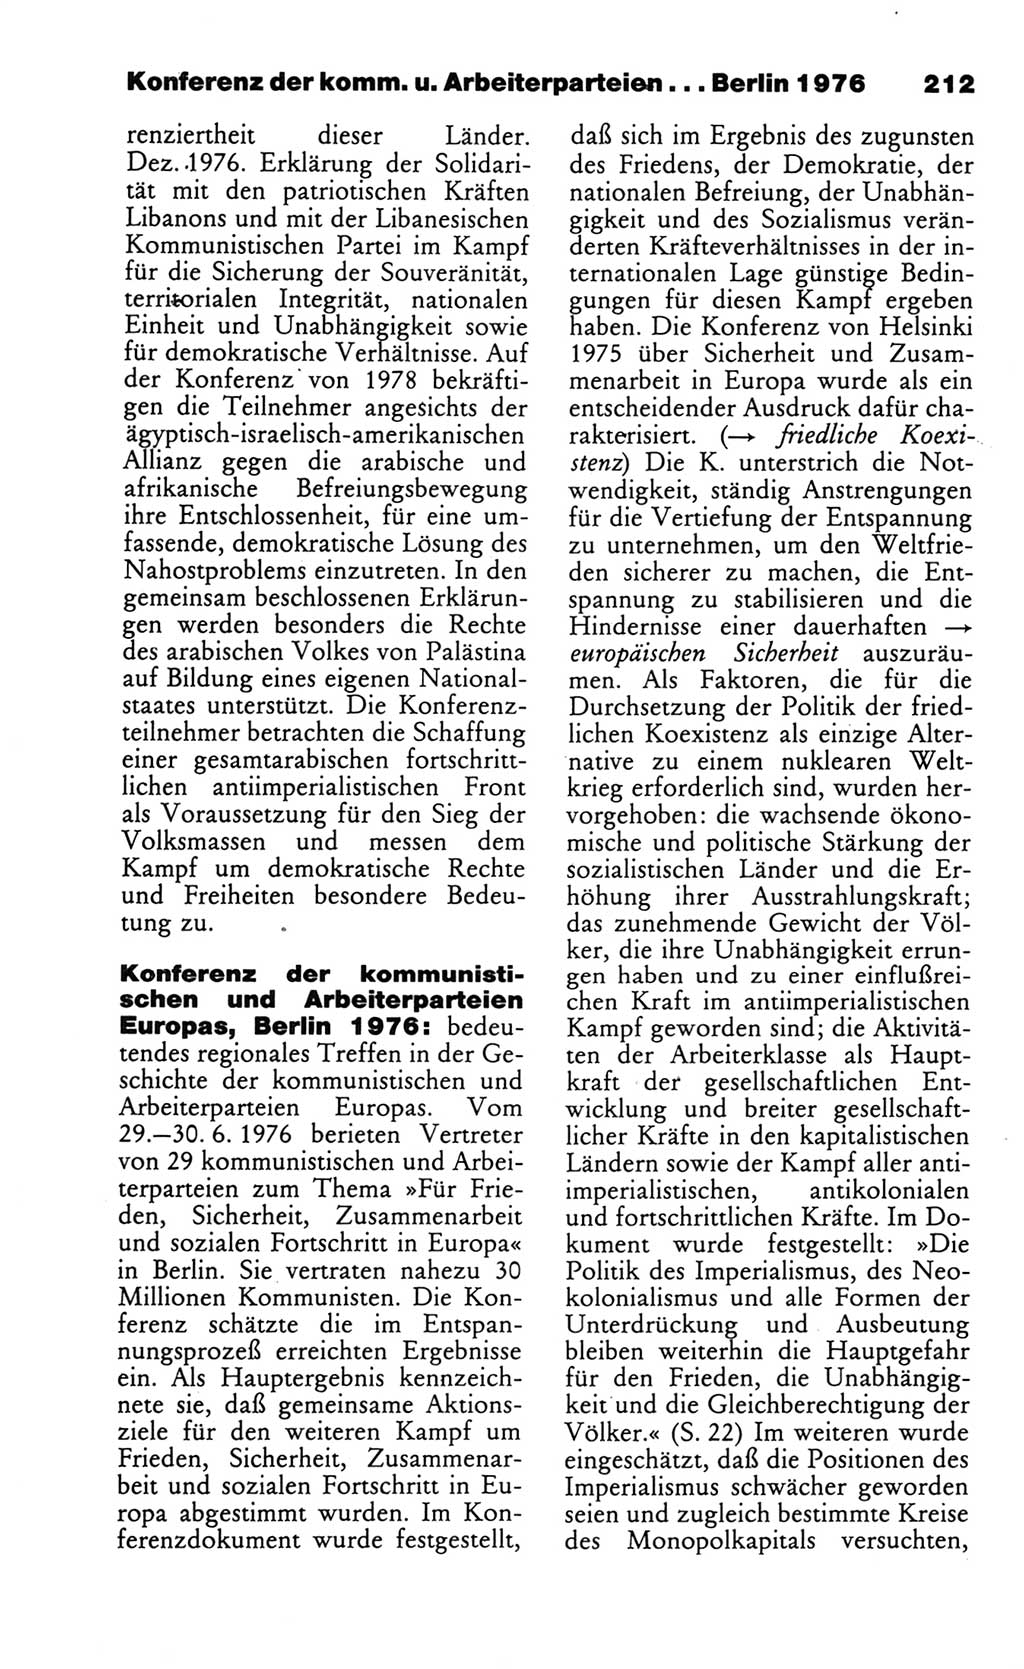 Wörterbuch des wissenschaftlichen Kommunismus [Deutsche Demokratische Republik (DDR)] 1986, Seite 212 (Wb. wiss. Komm. DDR 1986, S. 212)